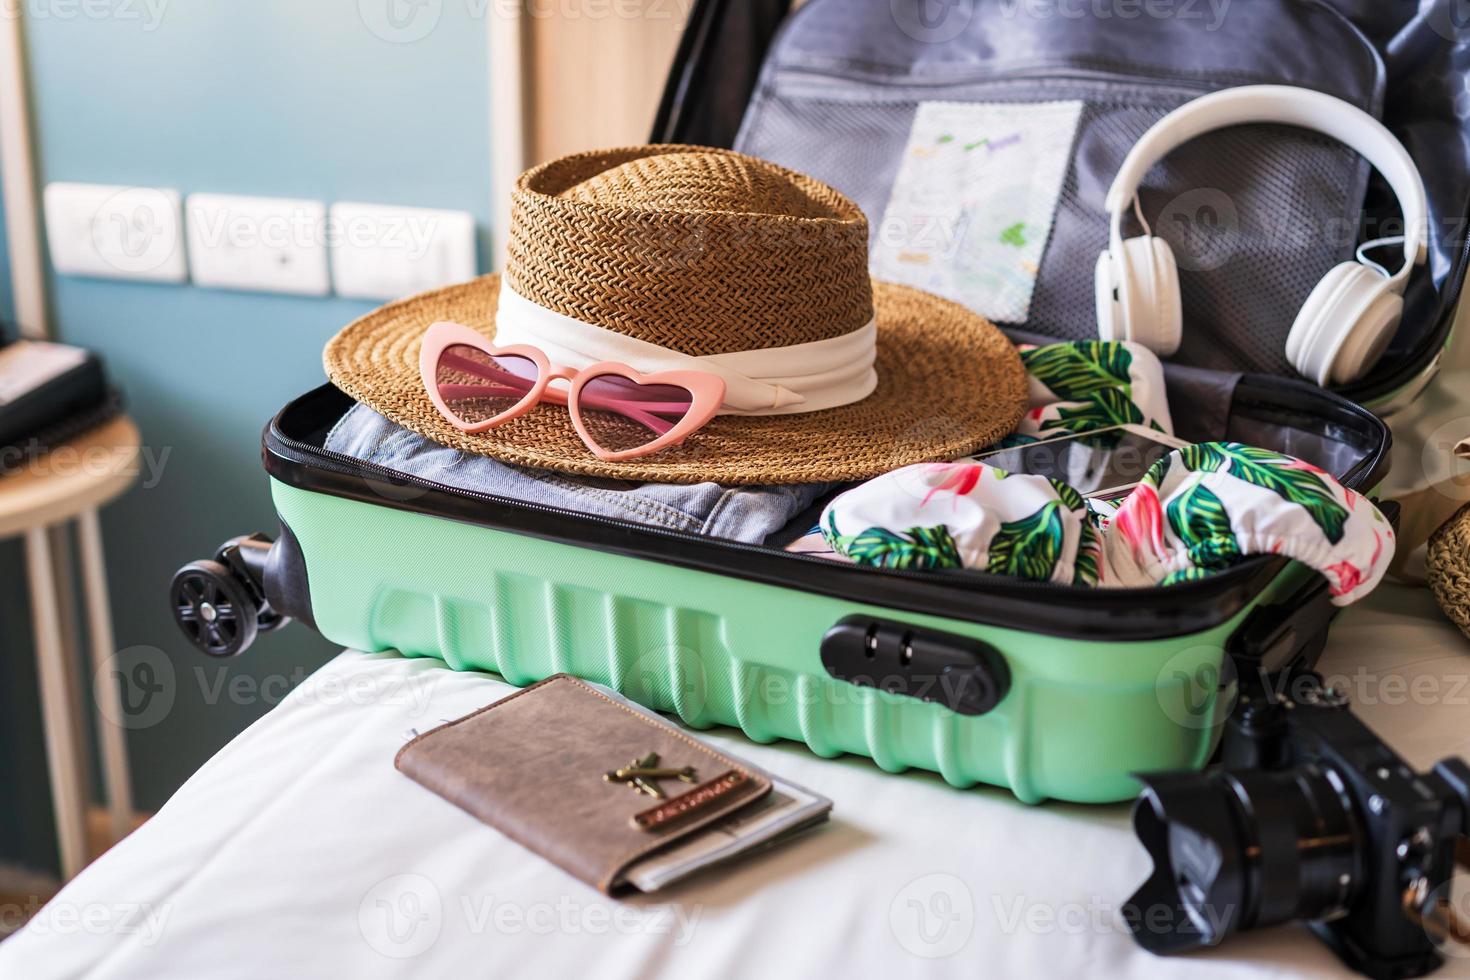 maleta de viajero y equipaje con accesorios de viaje y artículos